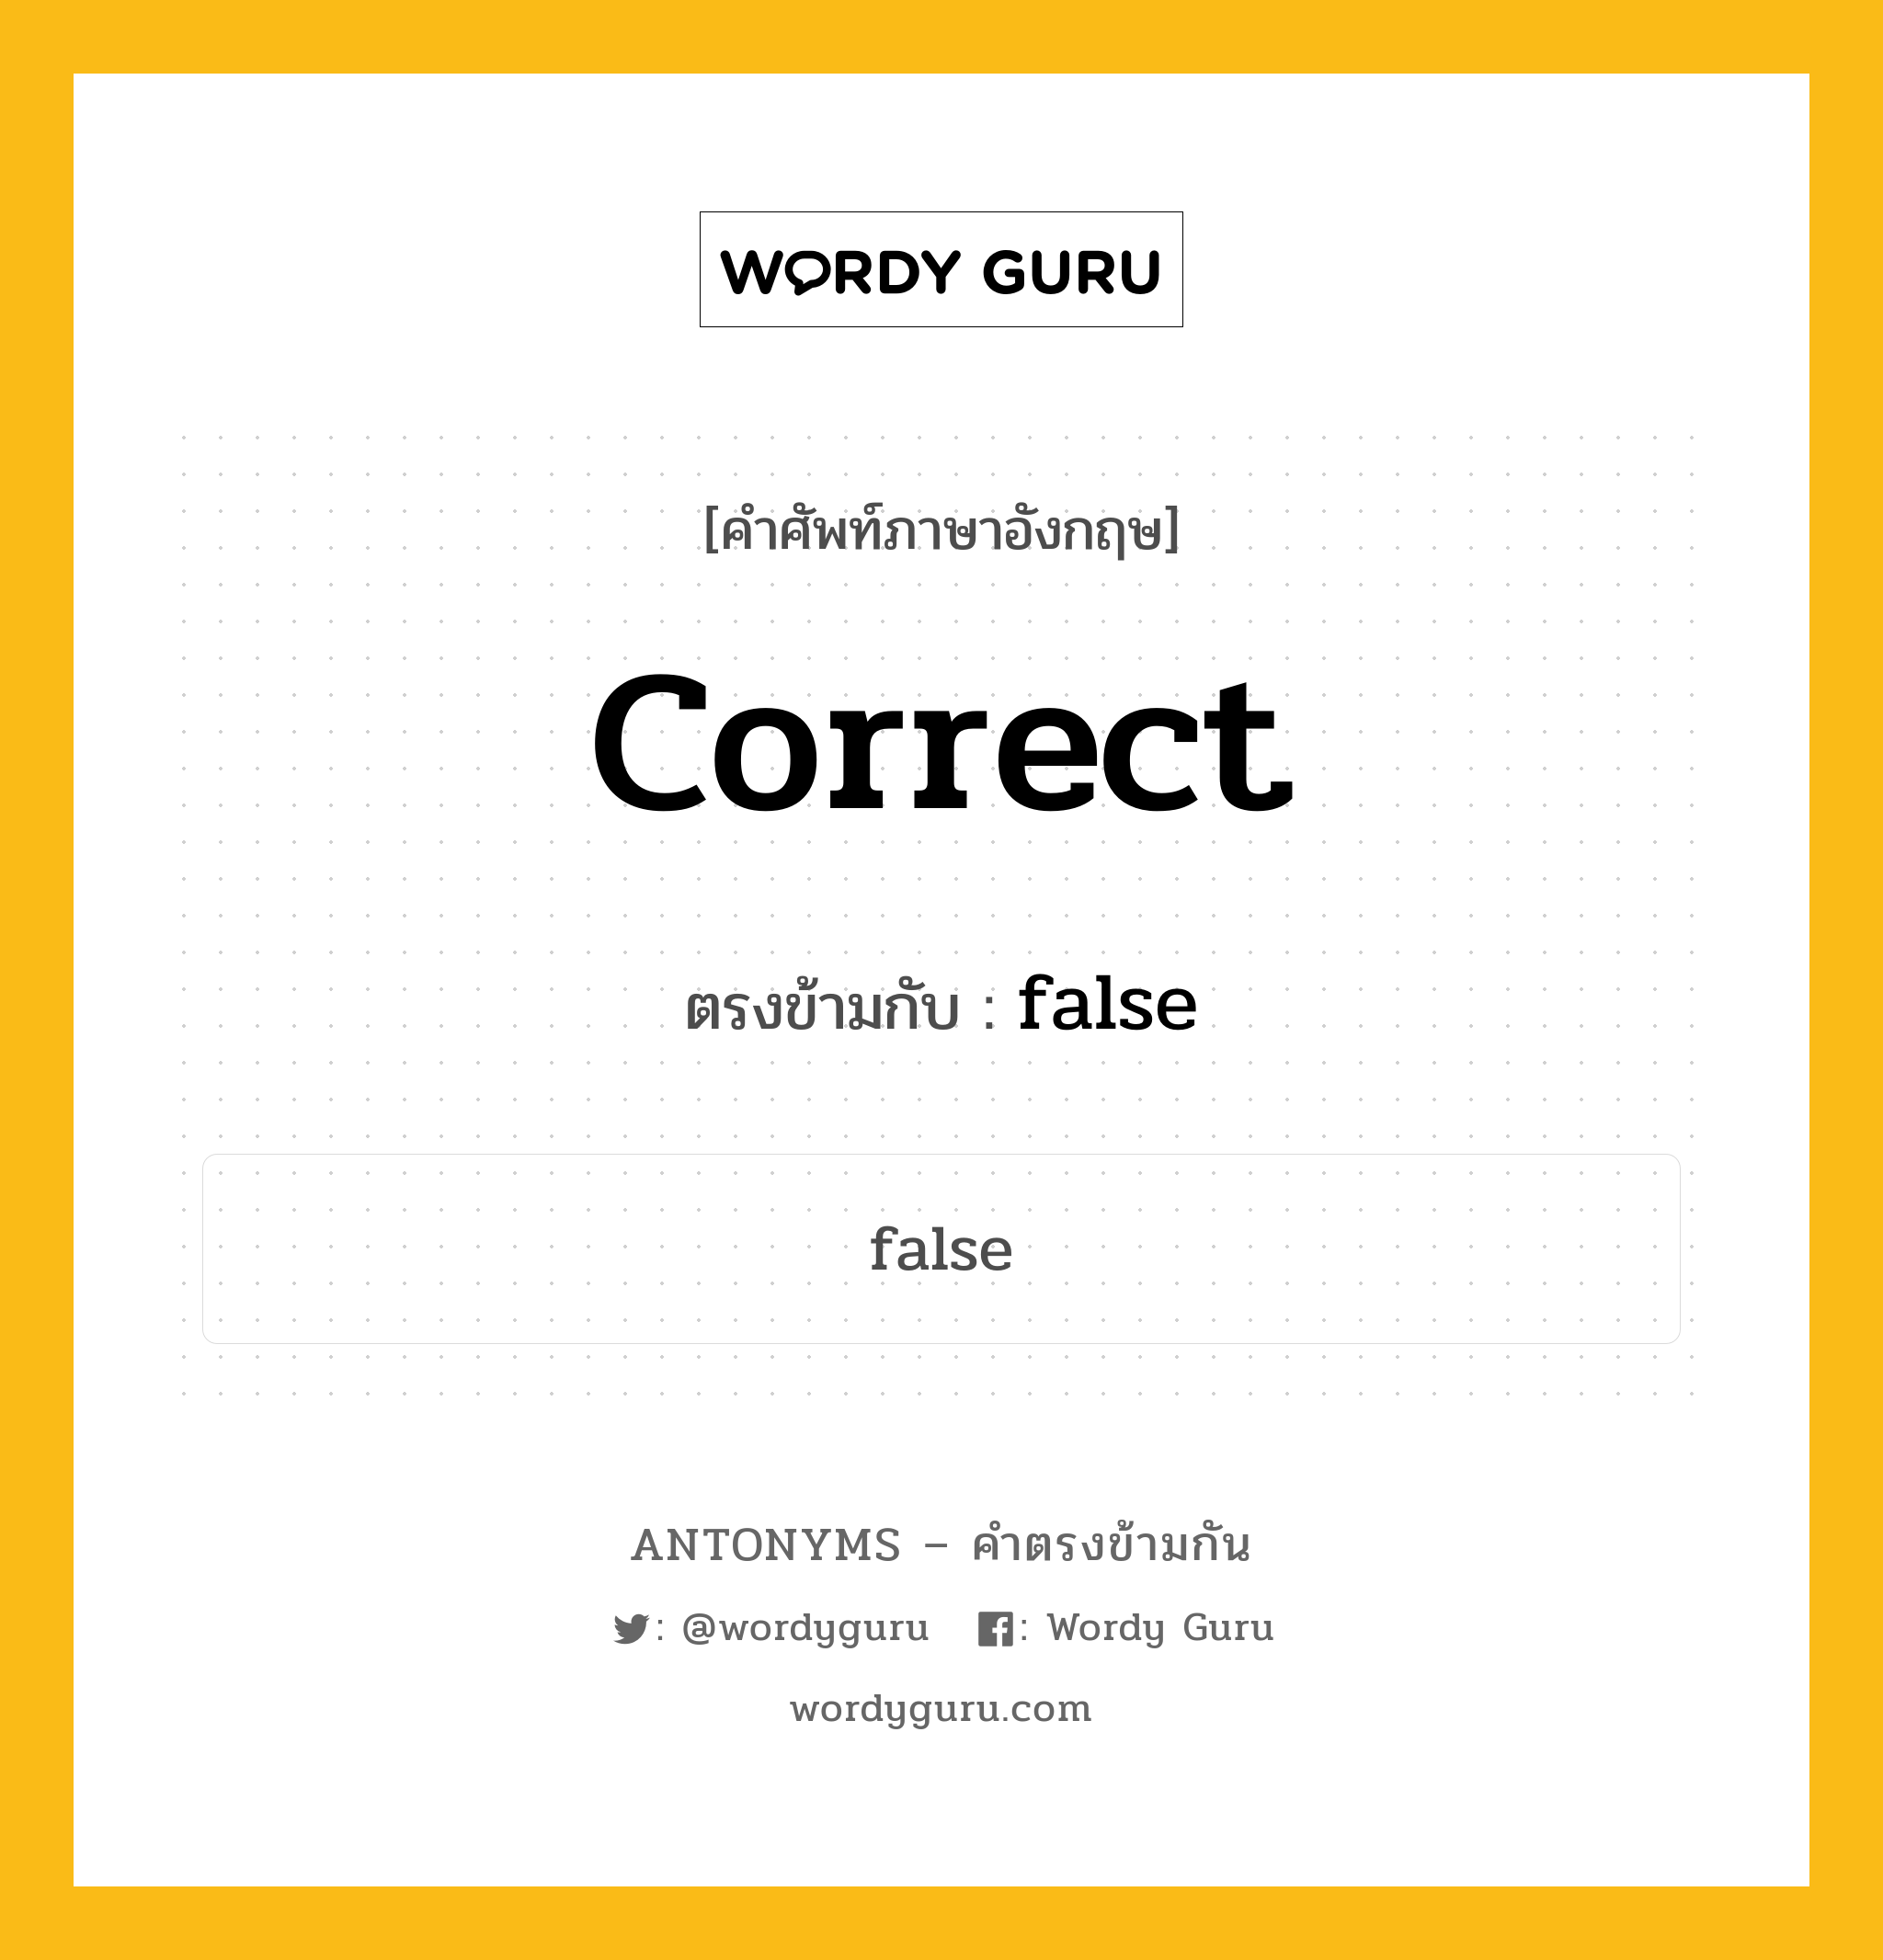 correct เป็นคำตรงข้ามกับคำไหนบ้าง?, คำศัพท์ภาษาอังกฤษ correct ตรงข้ามกับ false หมวด false